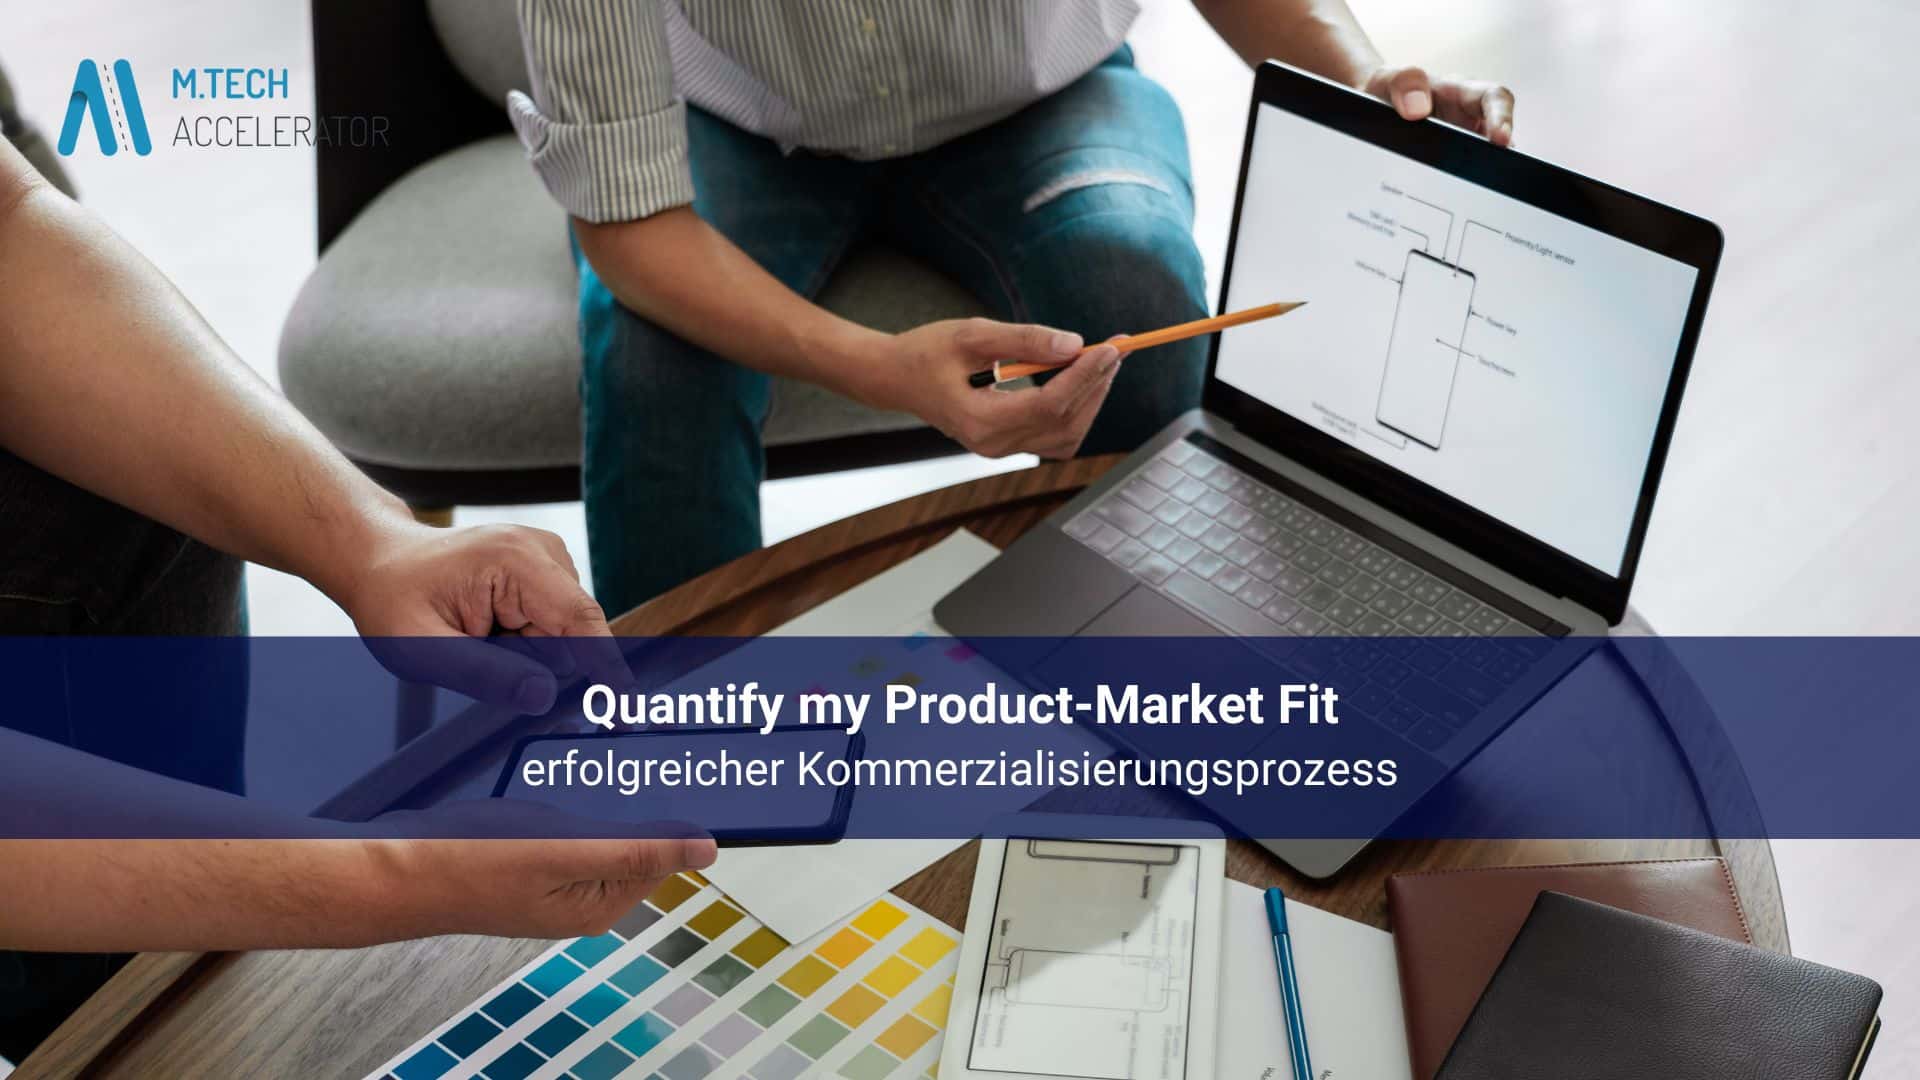 Quantify my Product-Market Fit: erfolgreicher Kommerzialisierungsprozess